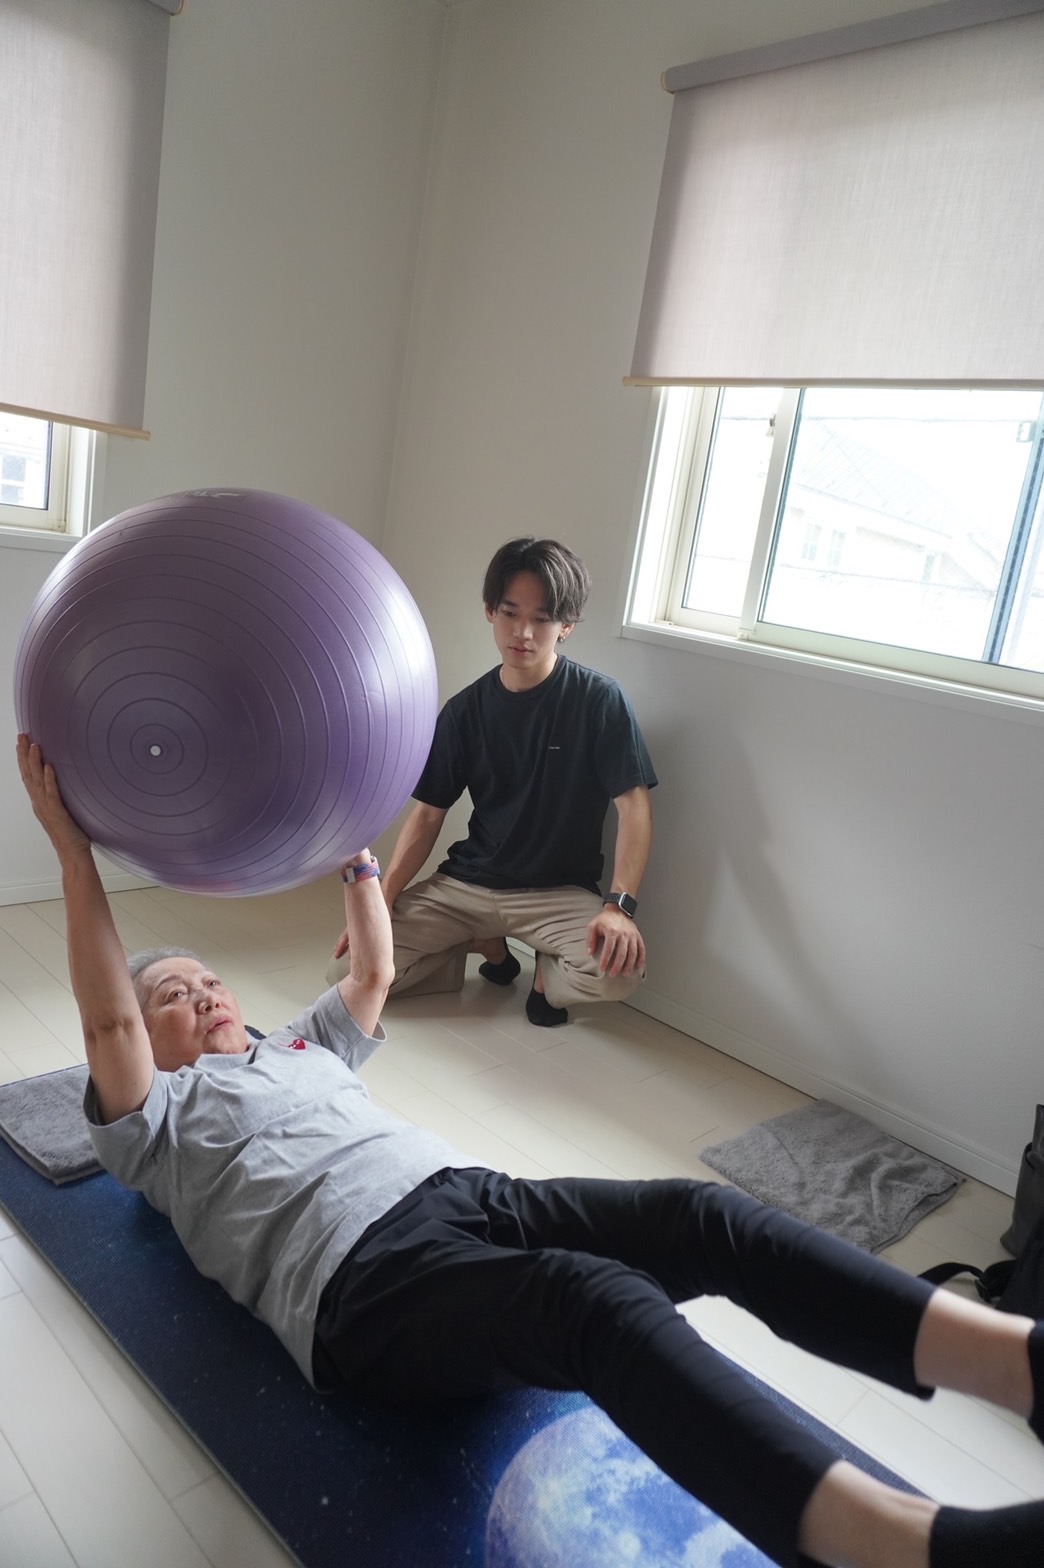 坐骨神経症緩和の為にトレーニングに励む高齢者